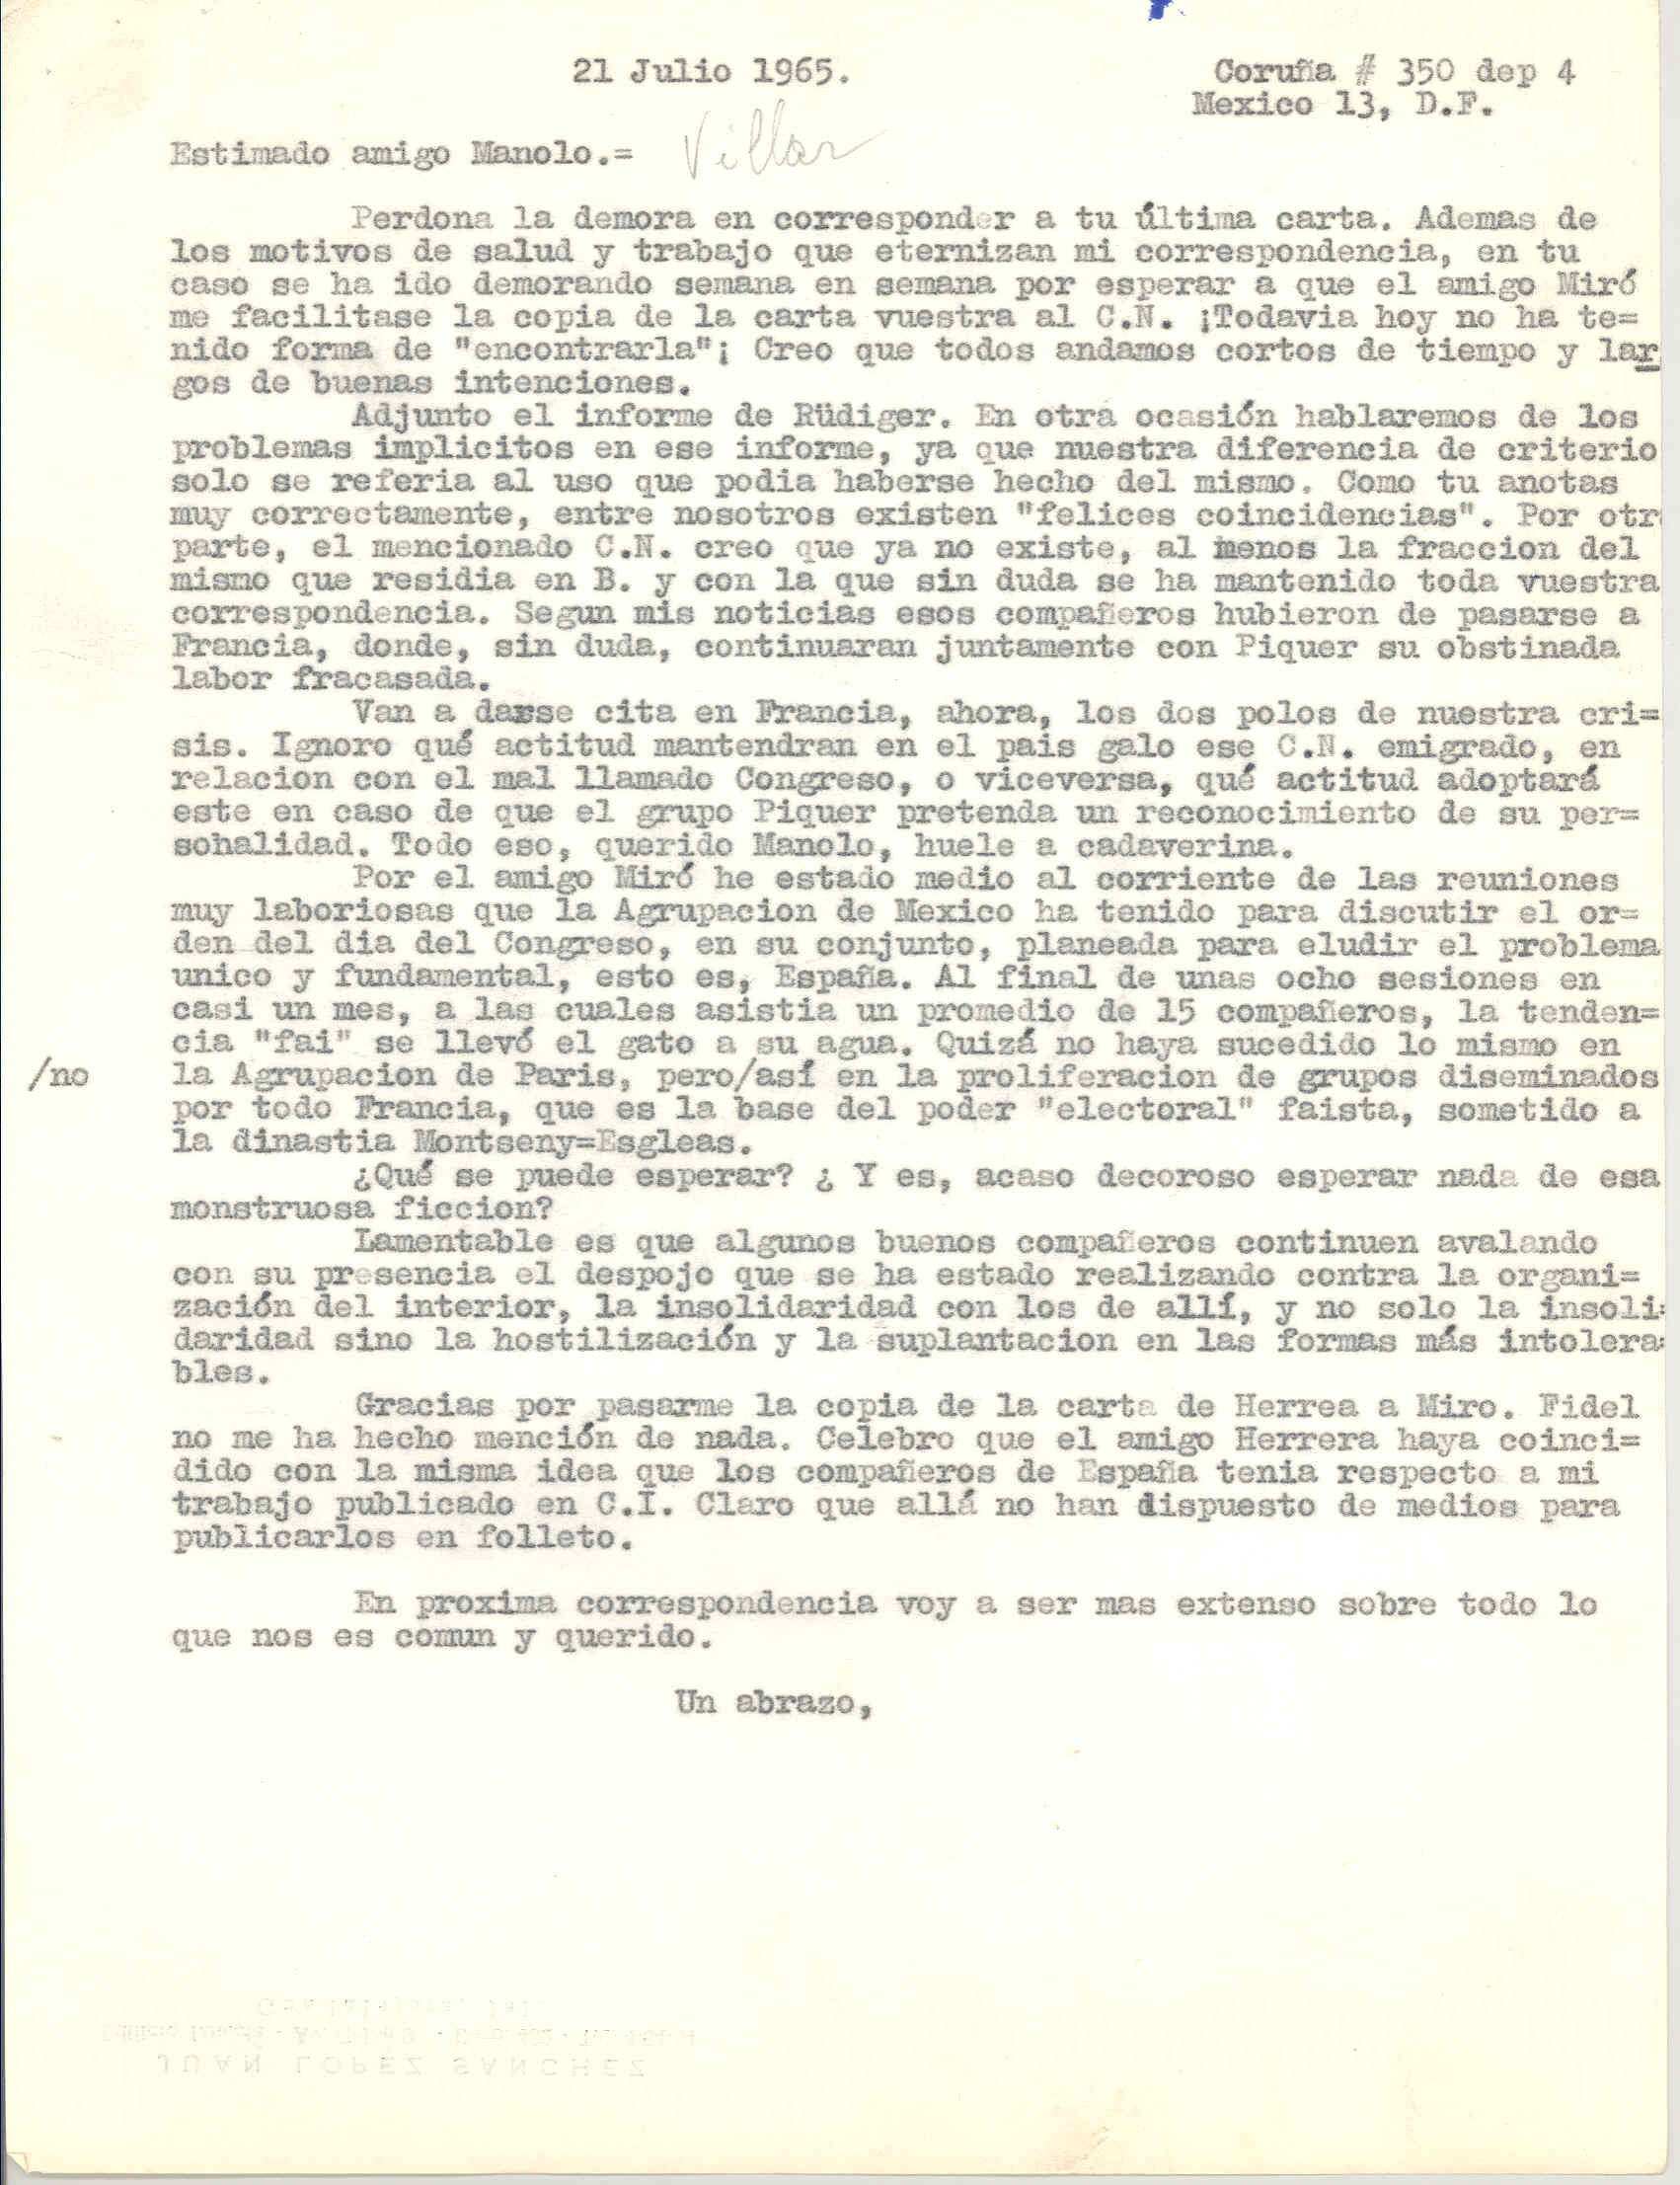 Carta a Manuel Villar con la que adjuntó el informe de Rüdiger y dejando para posterior correspondencia las diferencias de criterios entre ellos y comentando la cita en Francia de los dos polos de la crisis de España.